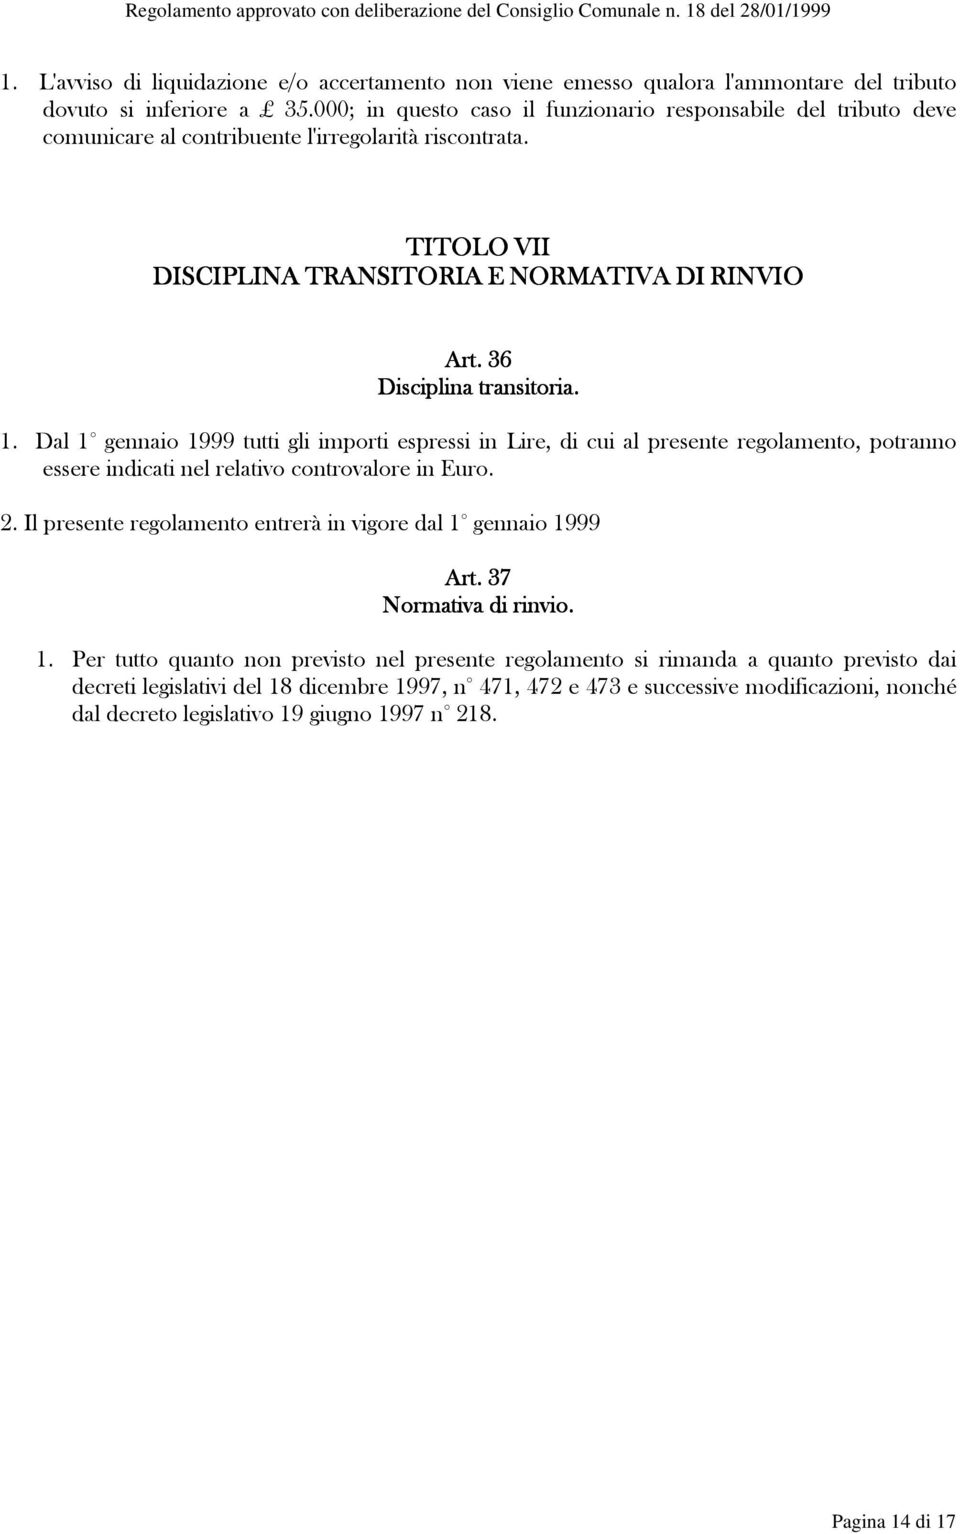 36 Disciplina transitoria. 1. Dal 1 gennaio 1999 tutti gli importi espressi in Lire, di cui al presente regolamento, potranno essere indicati nel relativo controvalore in Euro. 2.